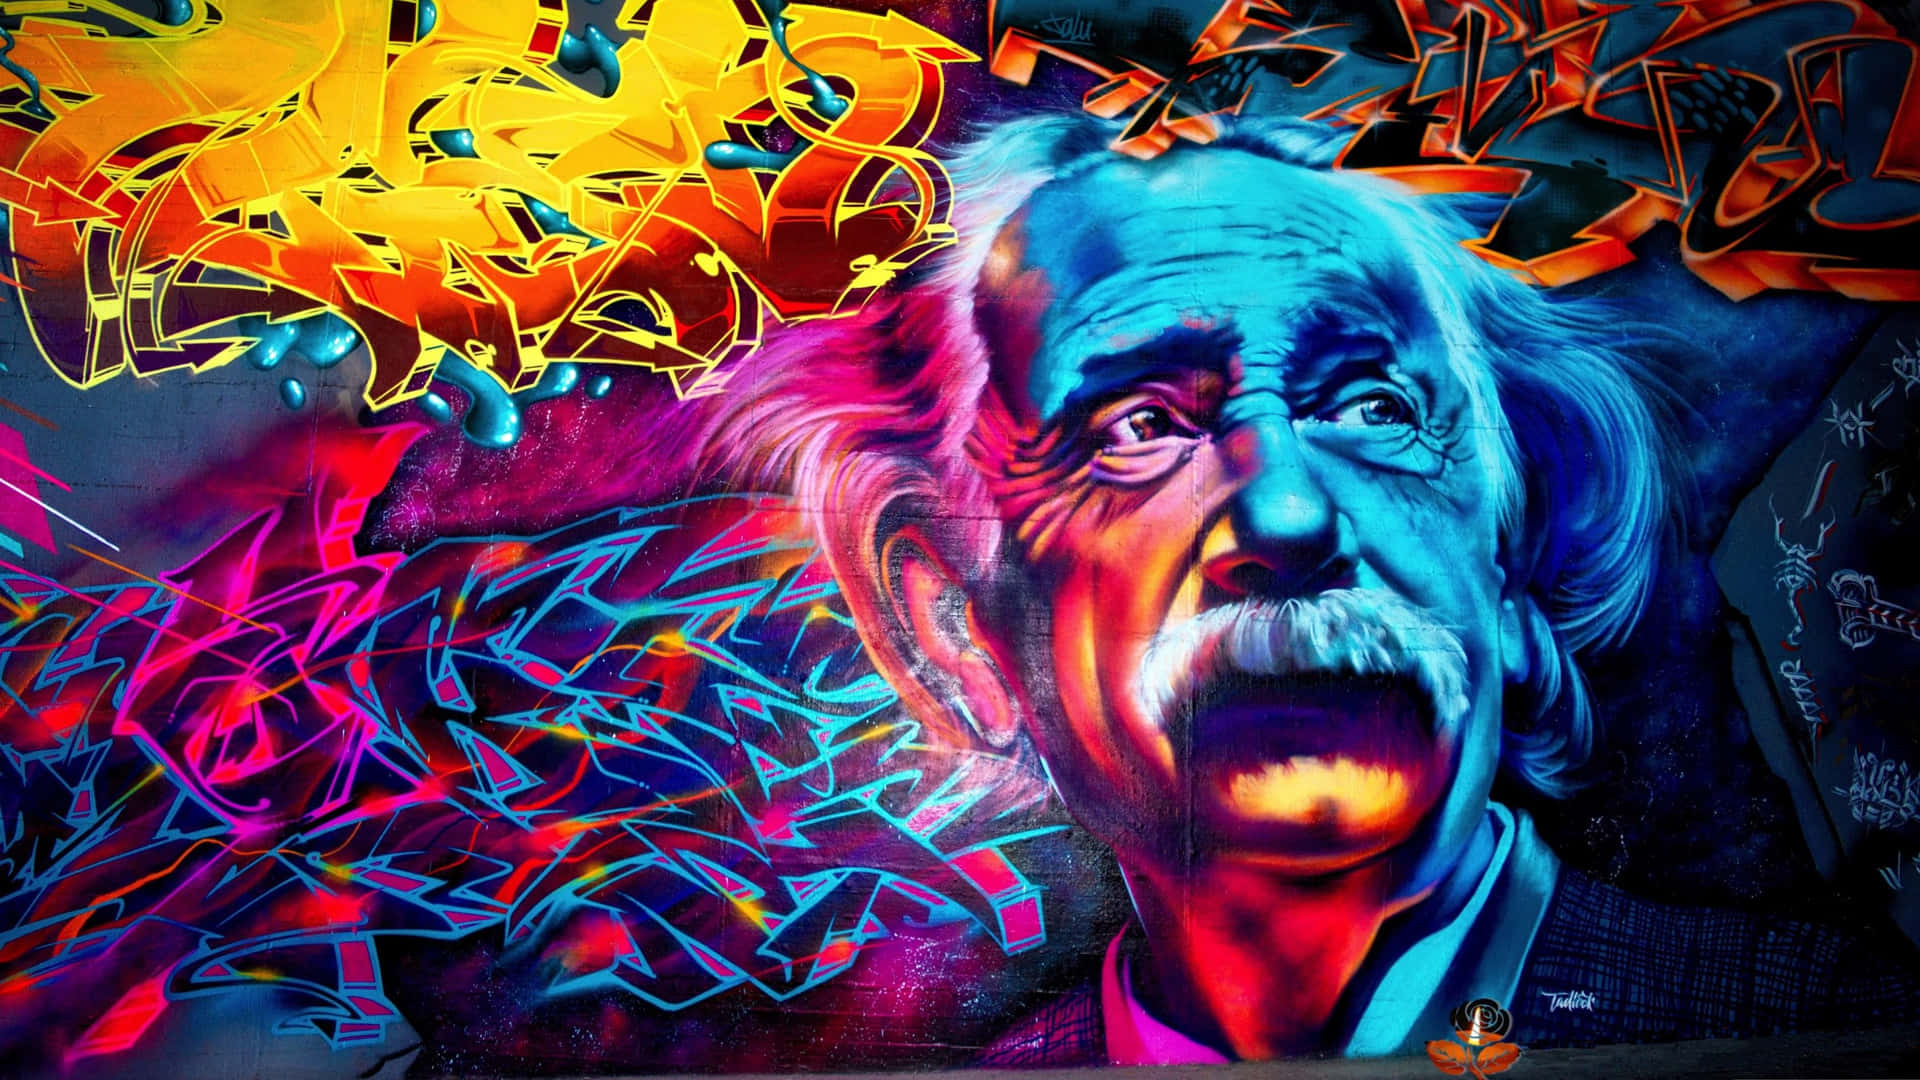 Colorful graffti wall art bringing life to the urban environment Wallpaper